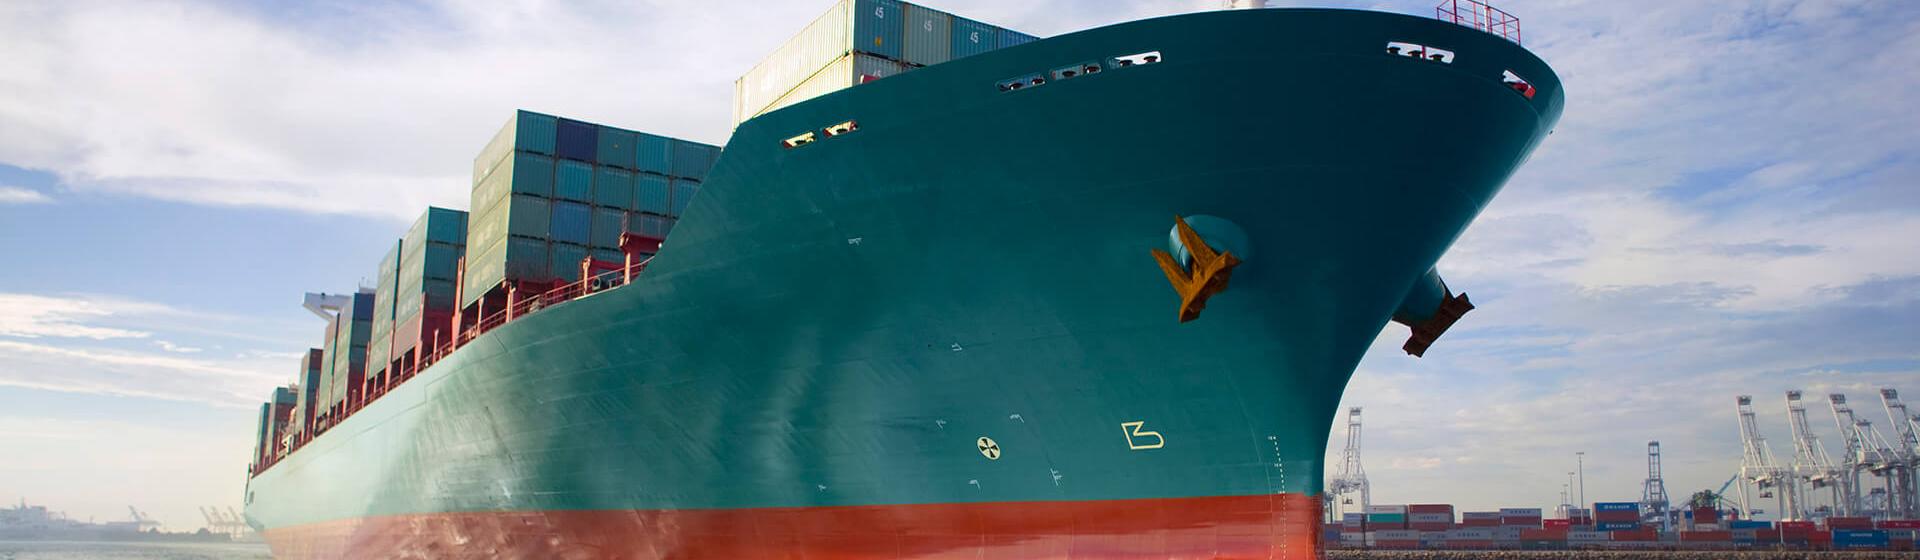 Frachtcontainerschiff vom Meeresspiegel aus gesehen in einem Hafen mit Kränen im Hintergrund.